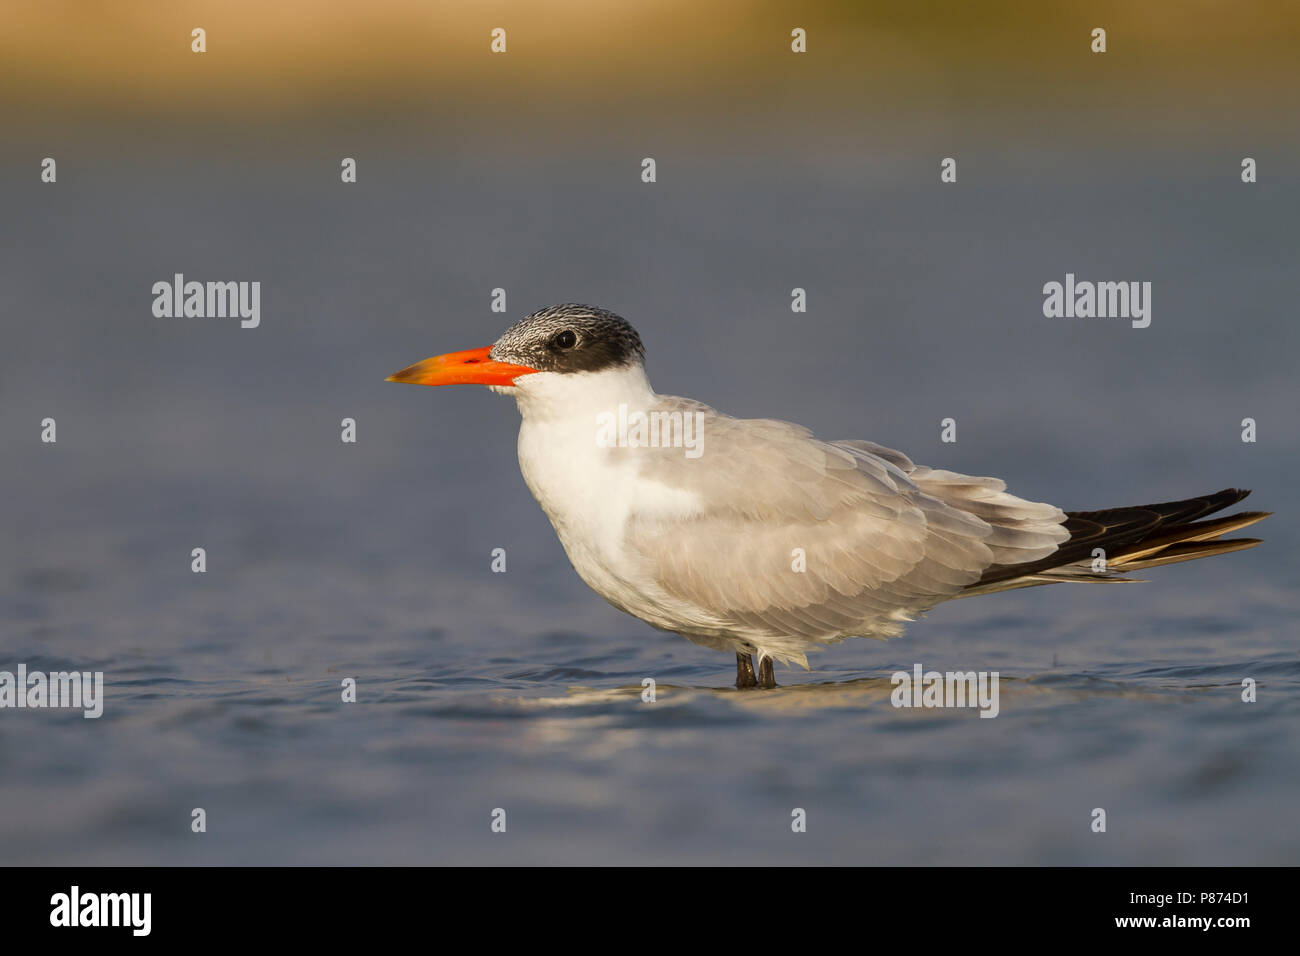 Reuzenstern; Caspian Tern, Hydroprogne caspia, Oman, 2nd cy Stock Photo